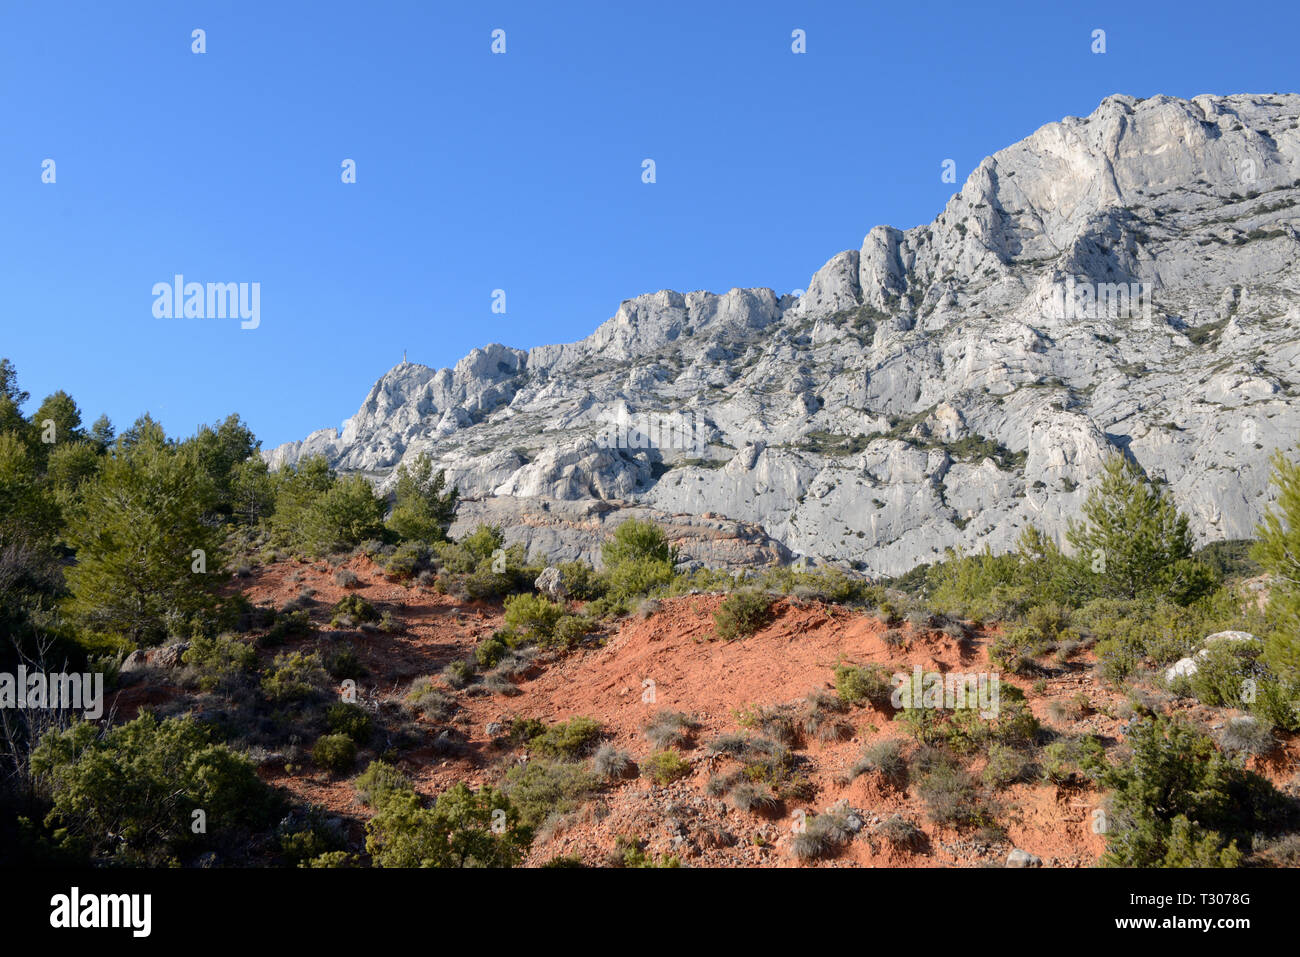 Ocker Aufschlüsse & südlichen Klippen des Mont Sainte-Victoire oder Berg Sainte Victoire, gefeiert von Paul Cezanne, Aix-en-Provence Provence Frankreich Stockfoto